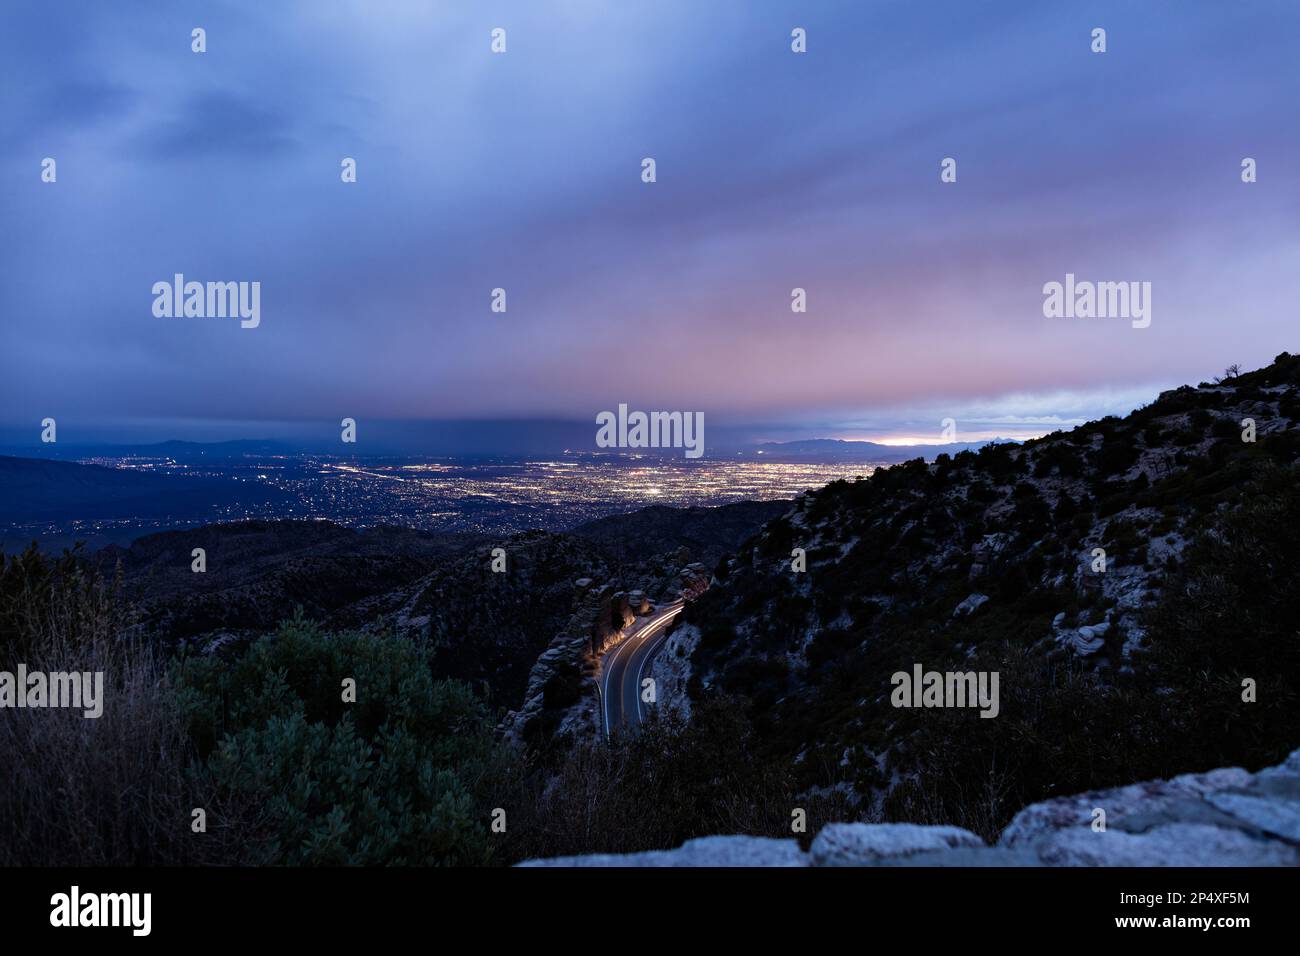 Una vista nocturna de Tucson, Arizona, visto desde arriba en las montañas de Santa Catalina. Los faros de un vehículo se ven moviéndose por una montaña. Foto de stock